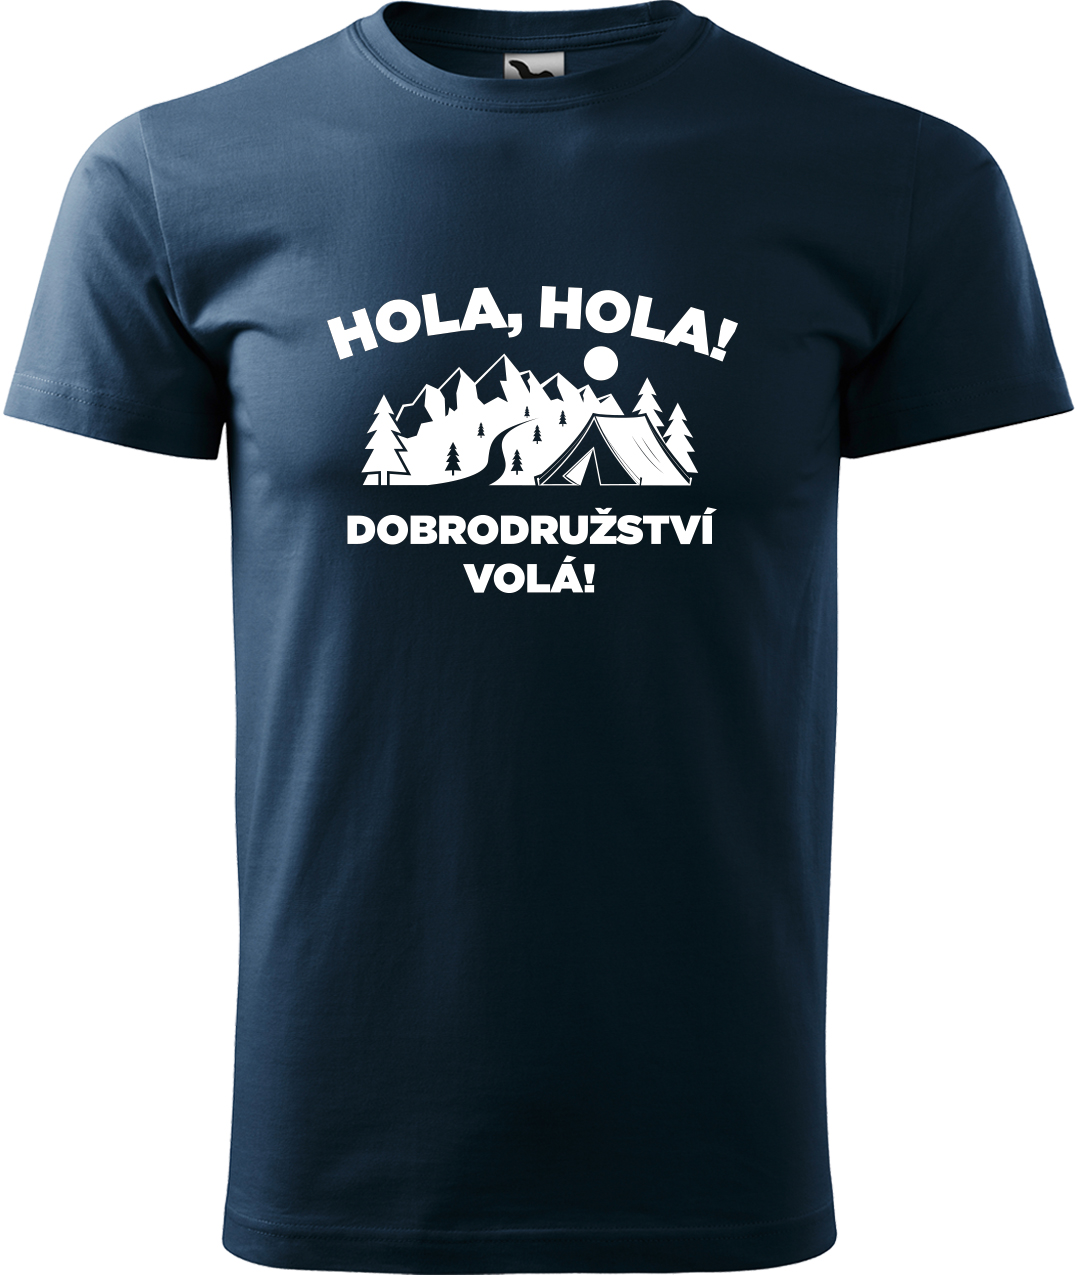 Pánské cestovatelské tričko - Hola hola! Dobrodružství volá! Velikost: L, Barva: Námořní modrá (02), Střih: pánský